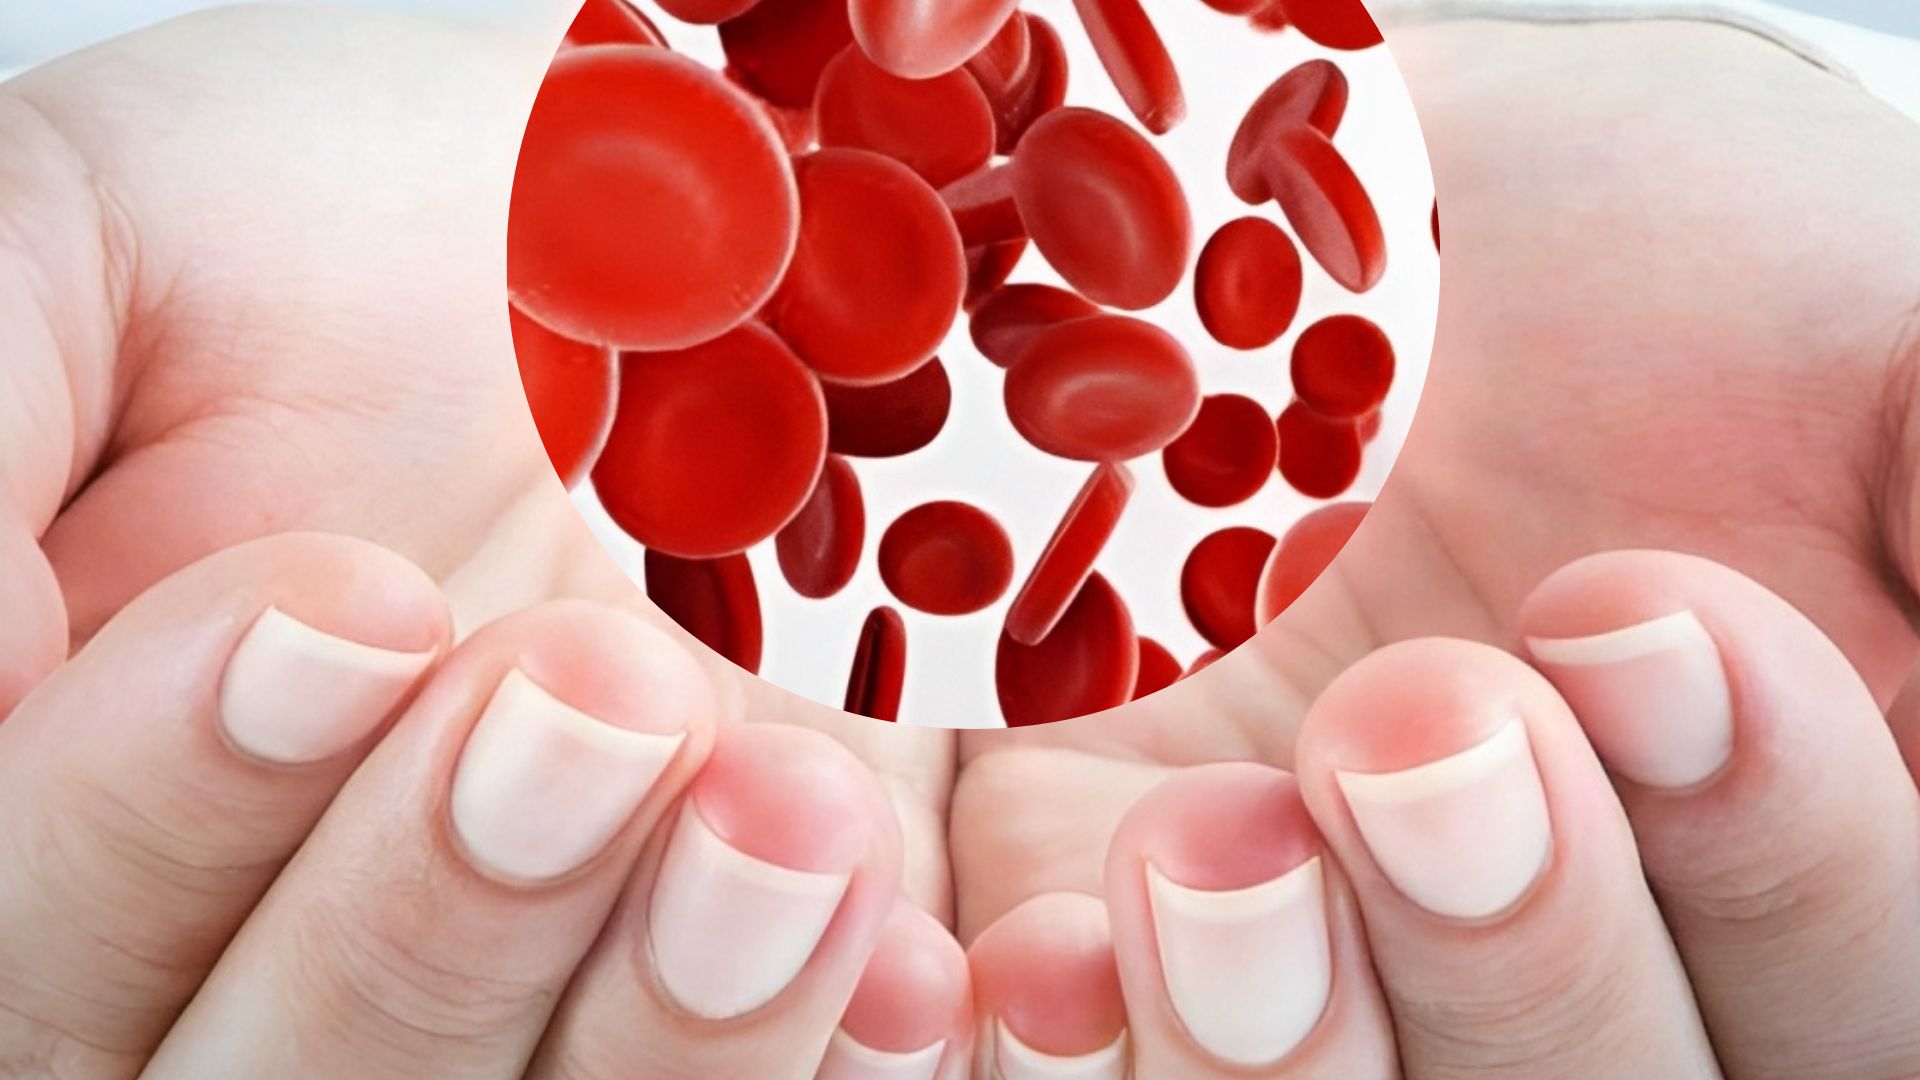 أعراض فقر الدم عند المرضعة